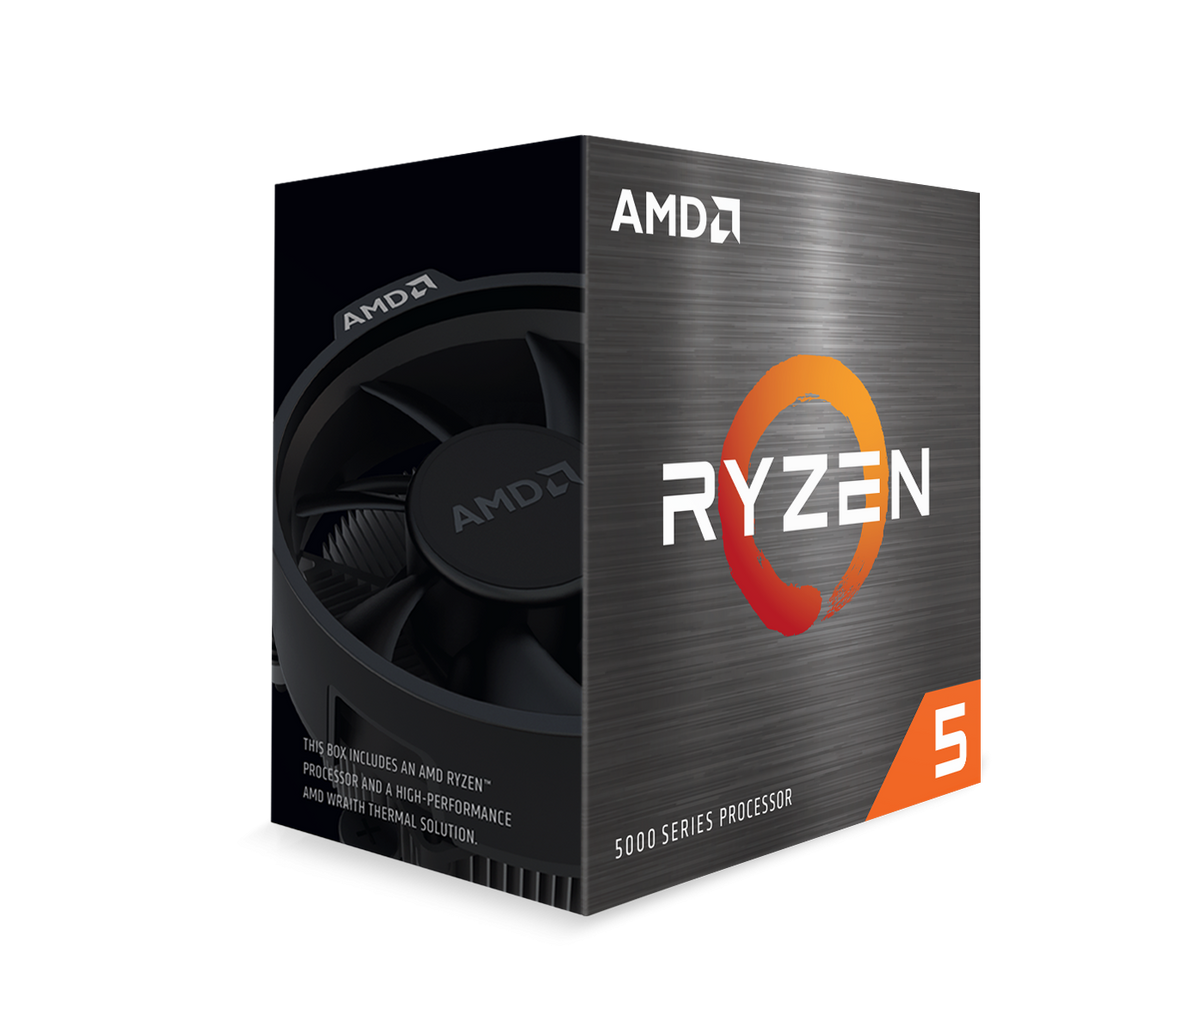 AMD Ryzen 5 5500 - 3.6 GHz - 6 cores - 12 threads - 16 MB cache - Socket AM4 (100-100000457MPK)